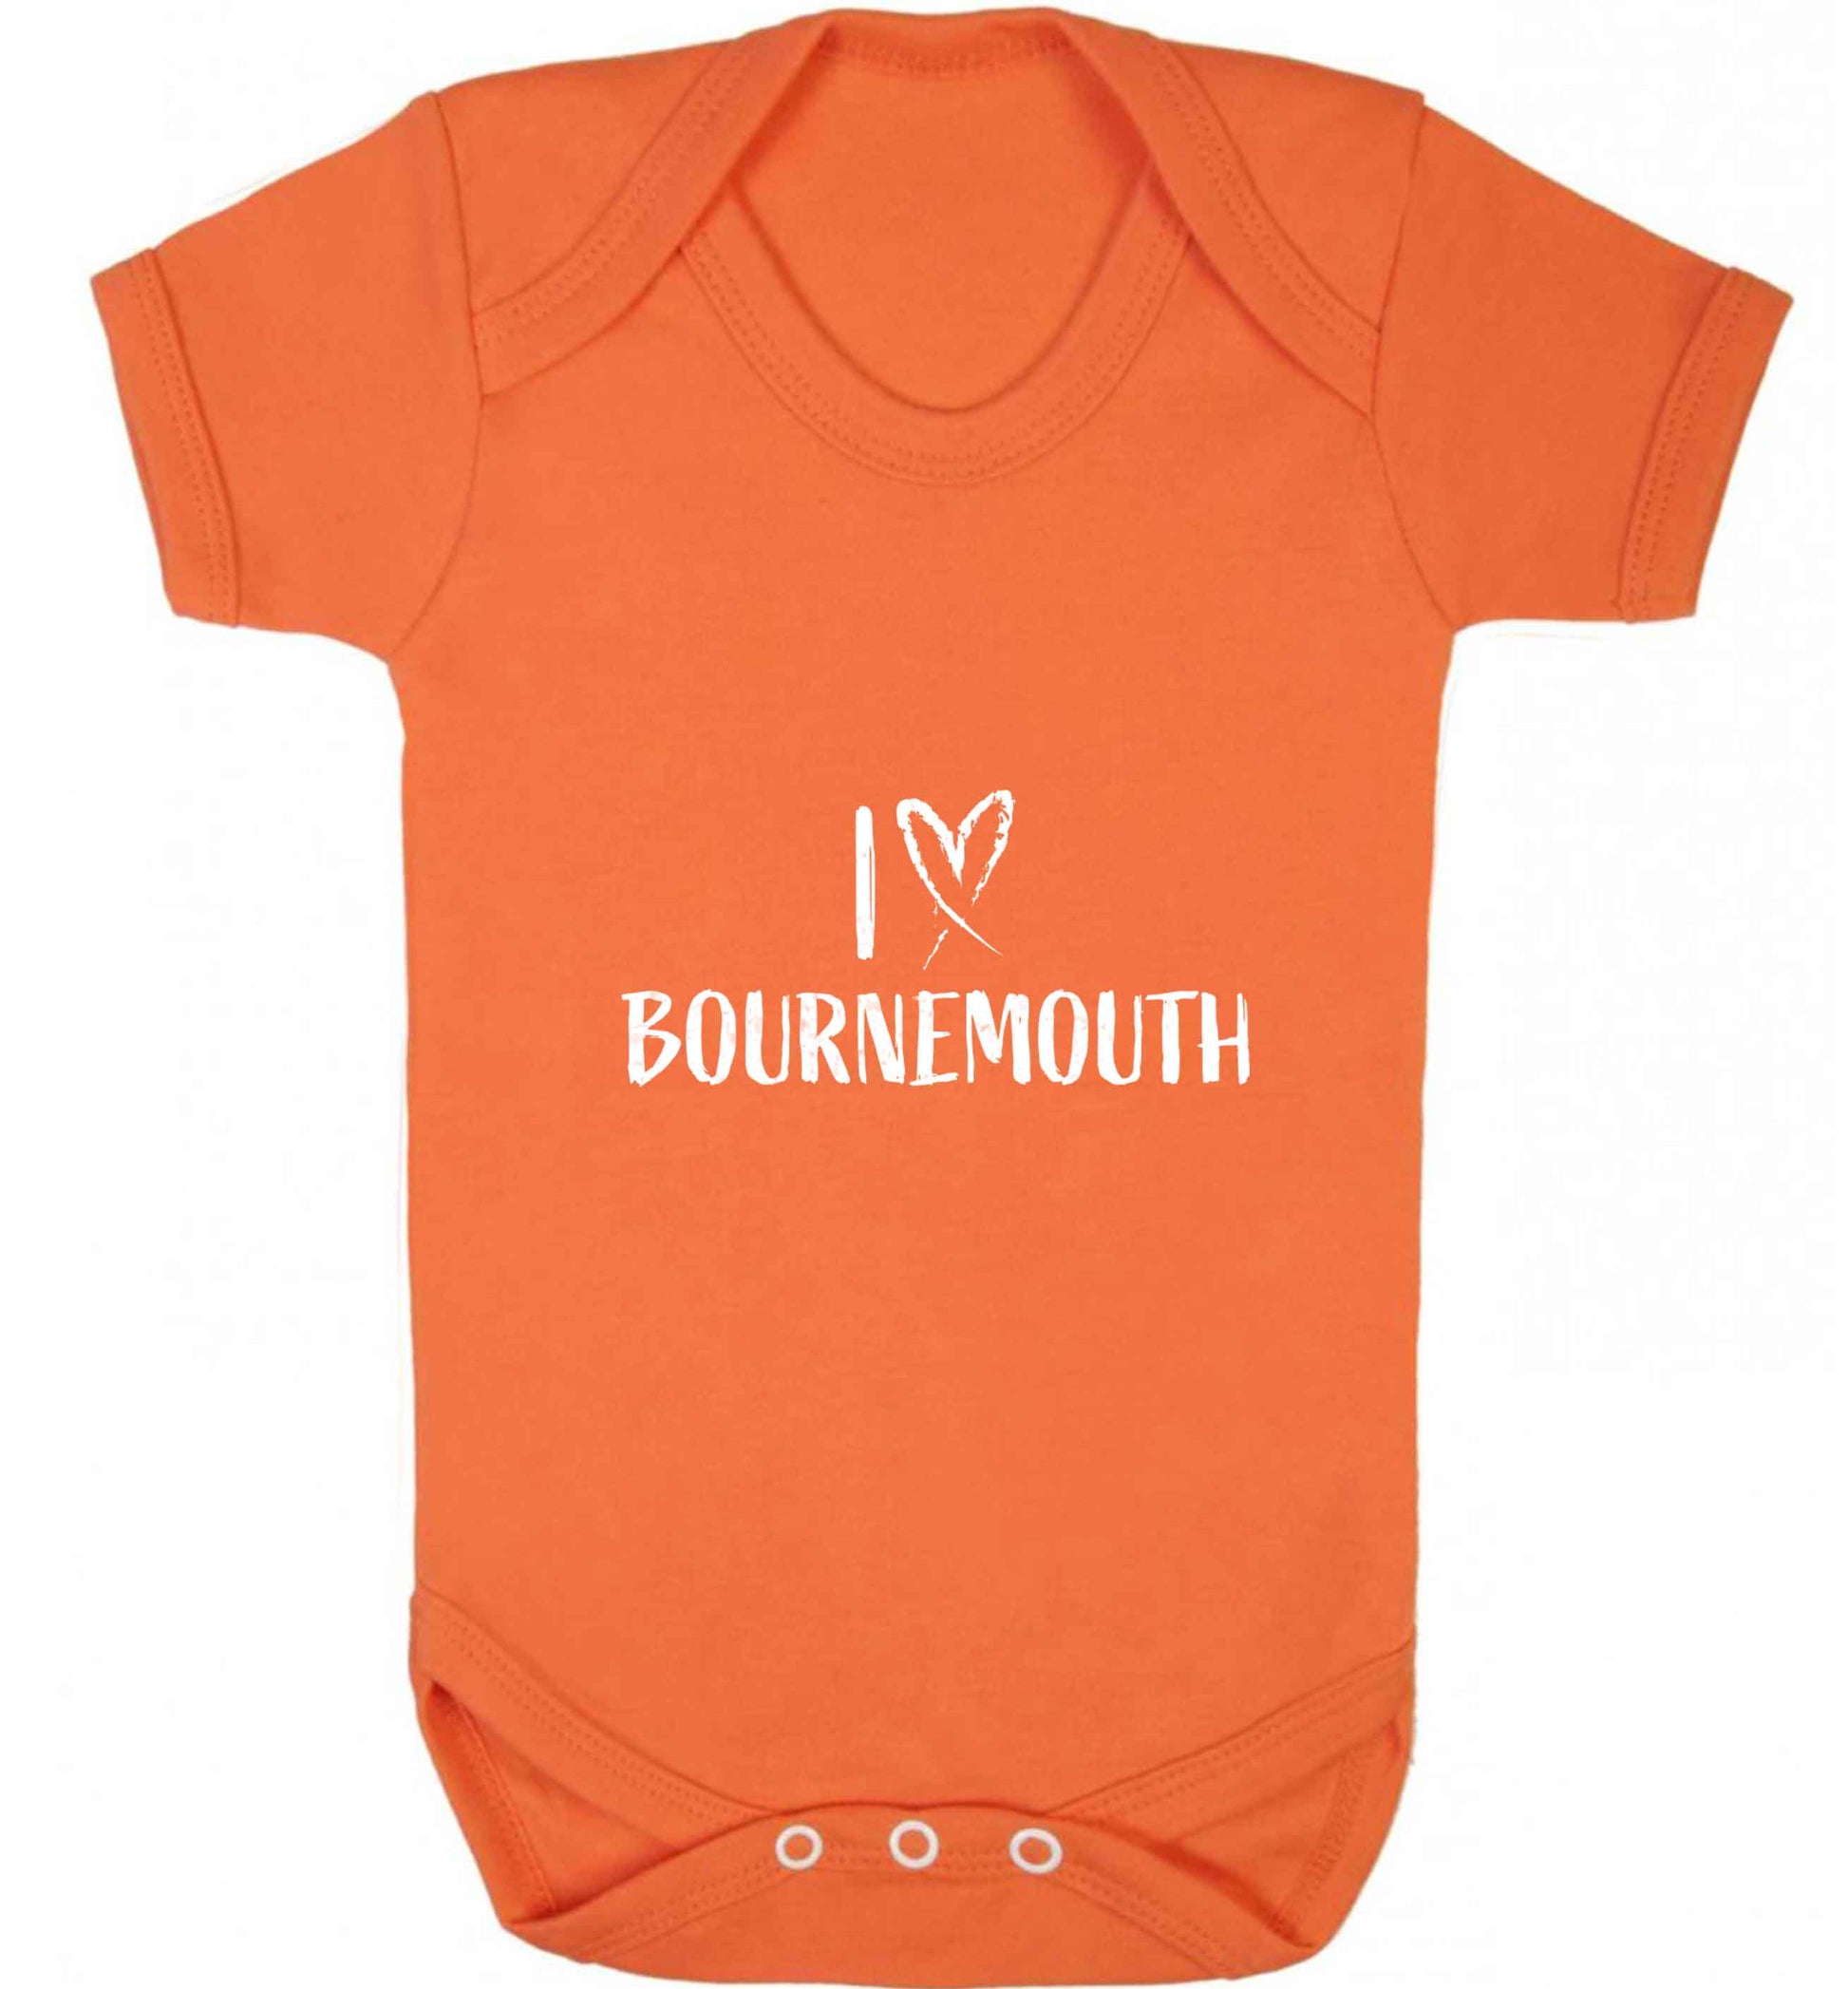 I love Bournemouth baby vest orange 18-24 months